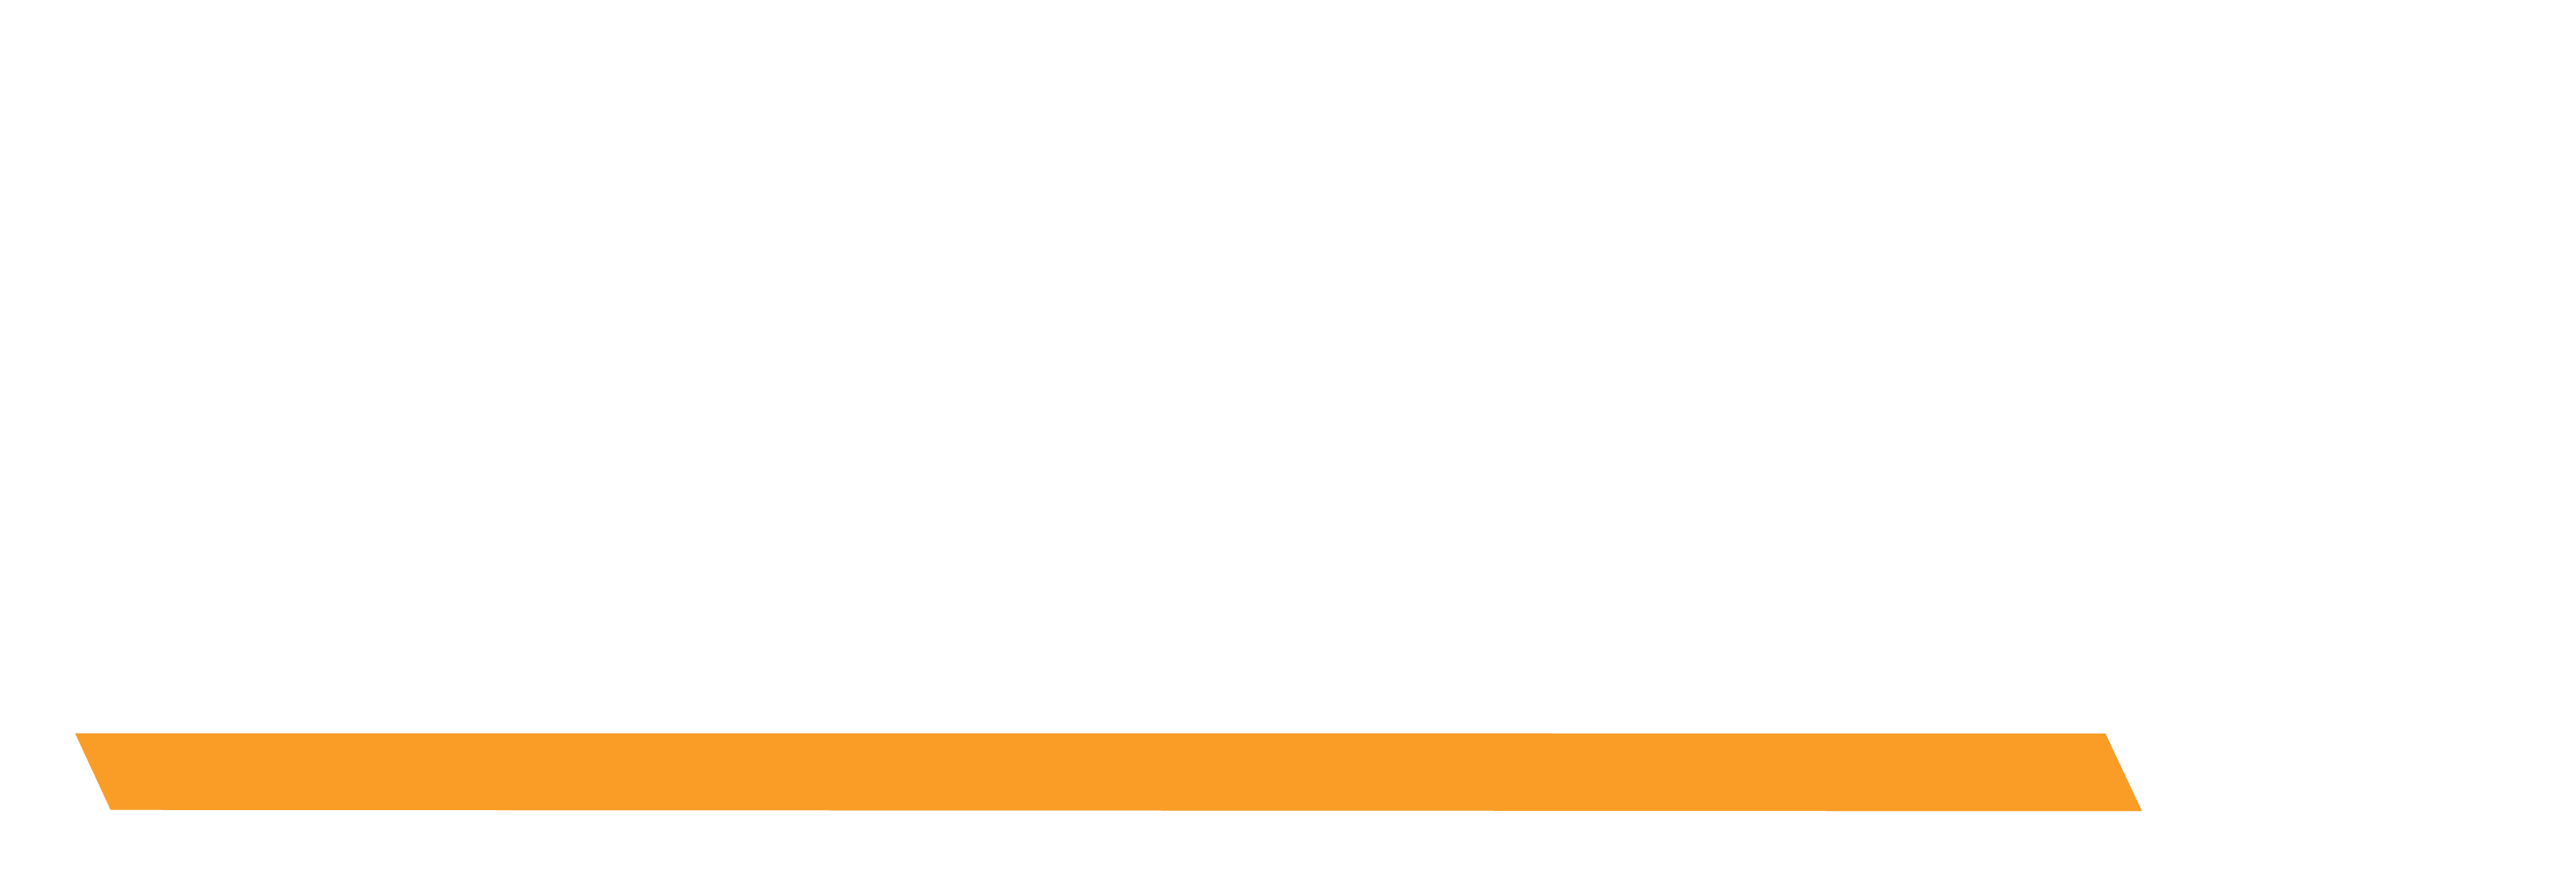 Leeboy Logo - ASCENDUM